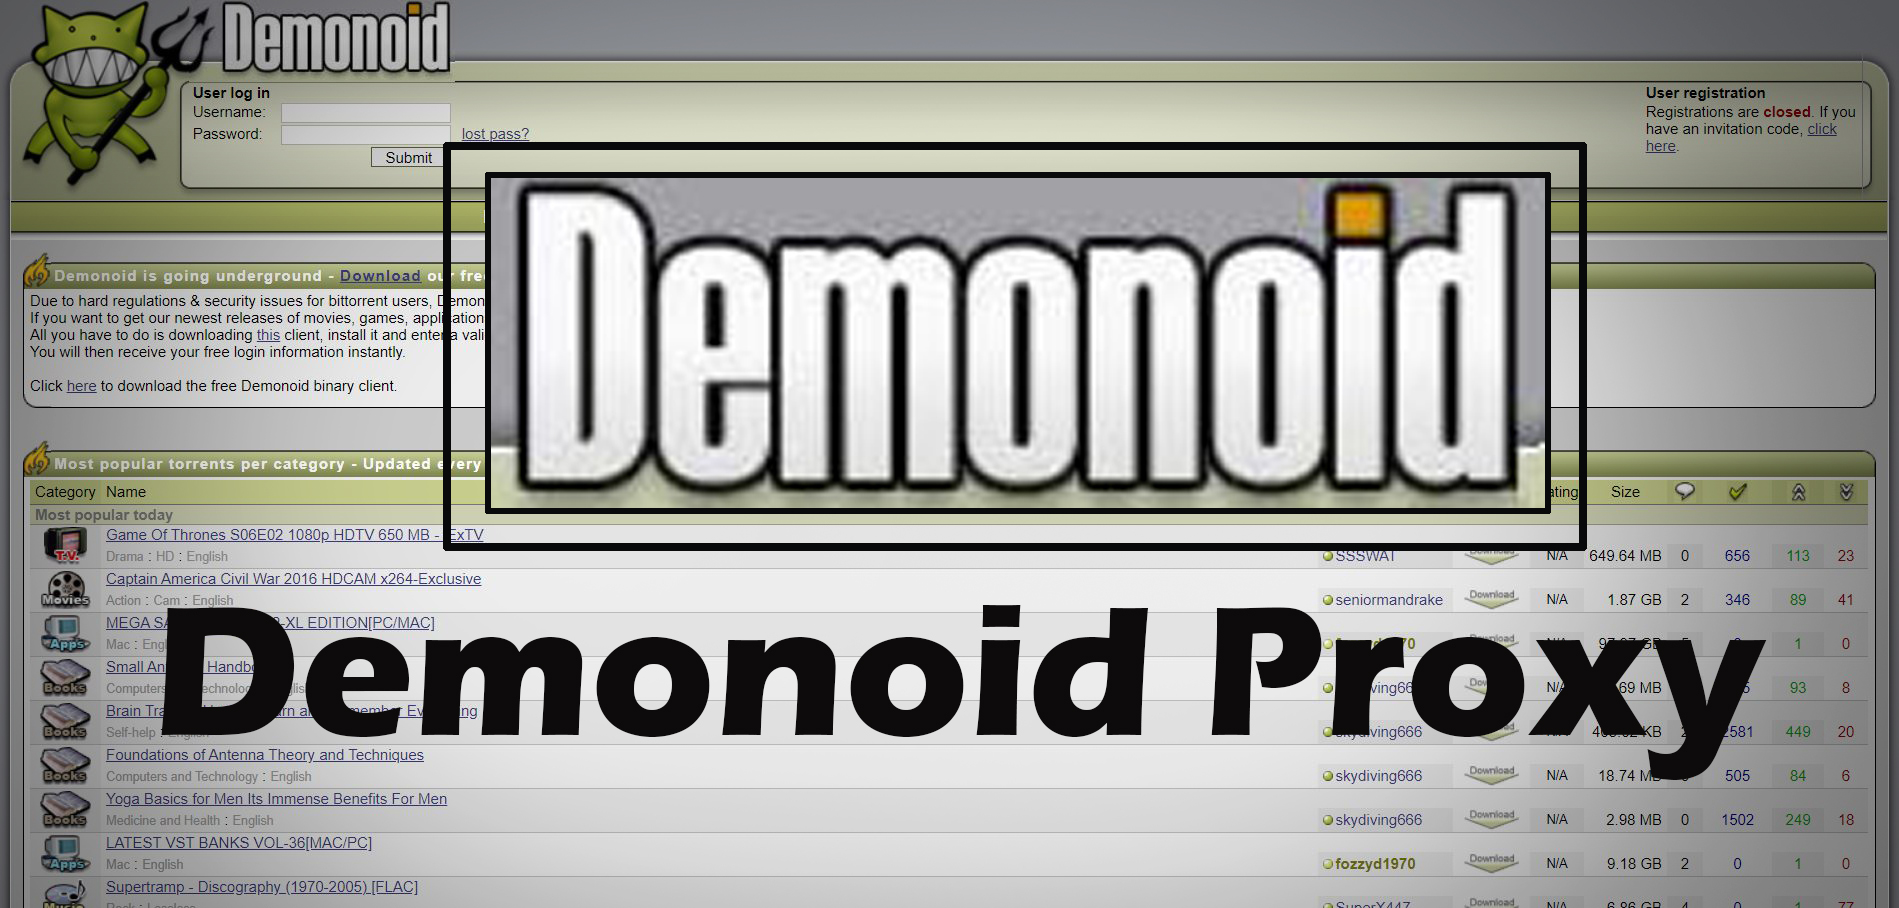 Demonoid Proxy